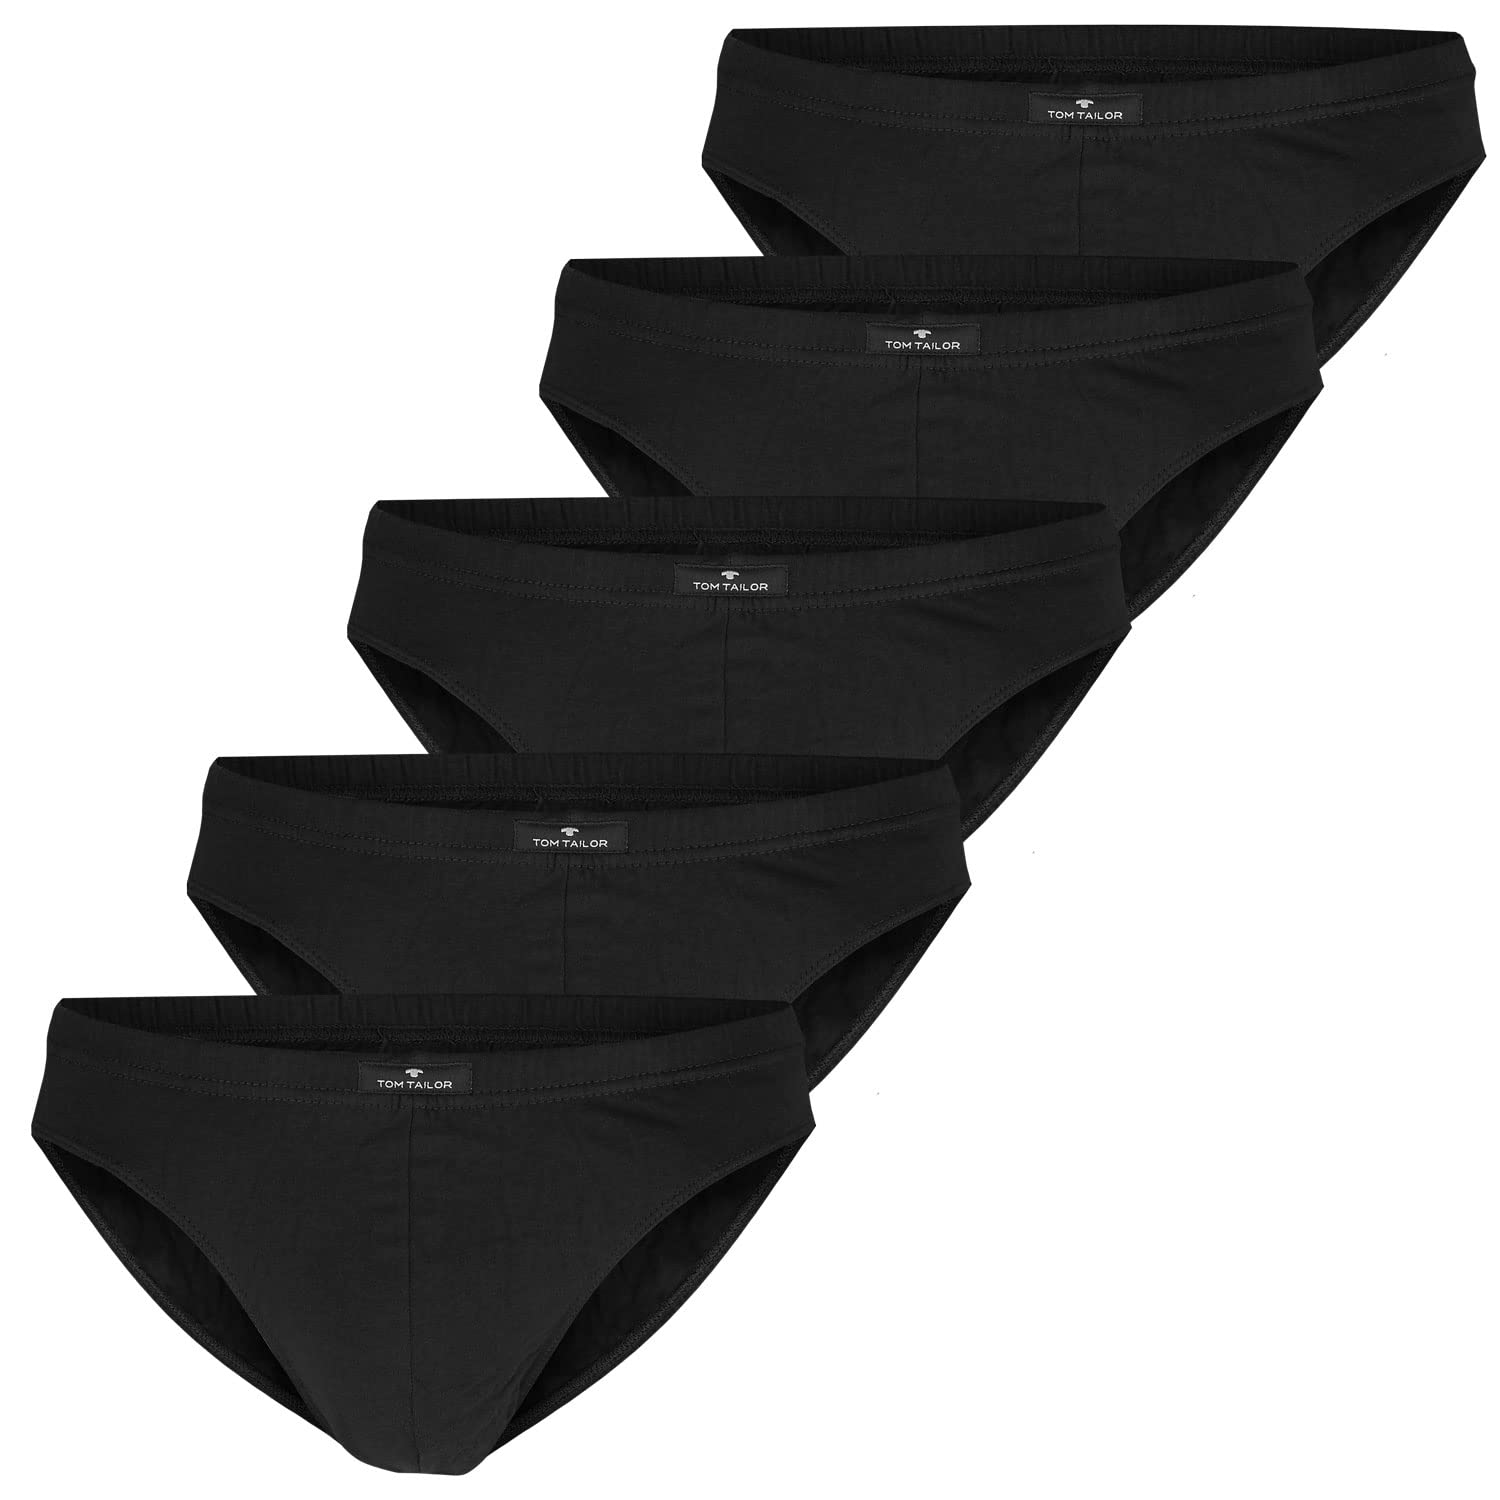 Tom Tailor Underwear Herren Mini 5er Pack Slip, Schwarz (Black 9000), X-Large (Herstellergröße: XL/7)